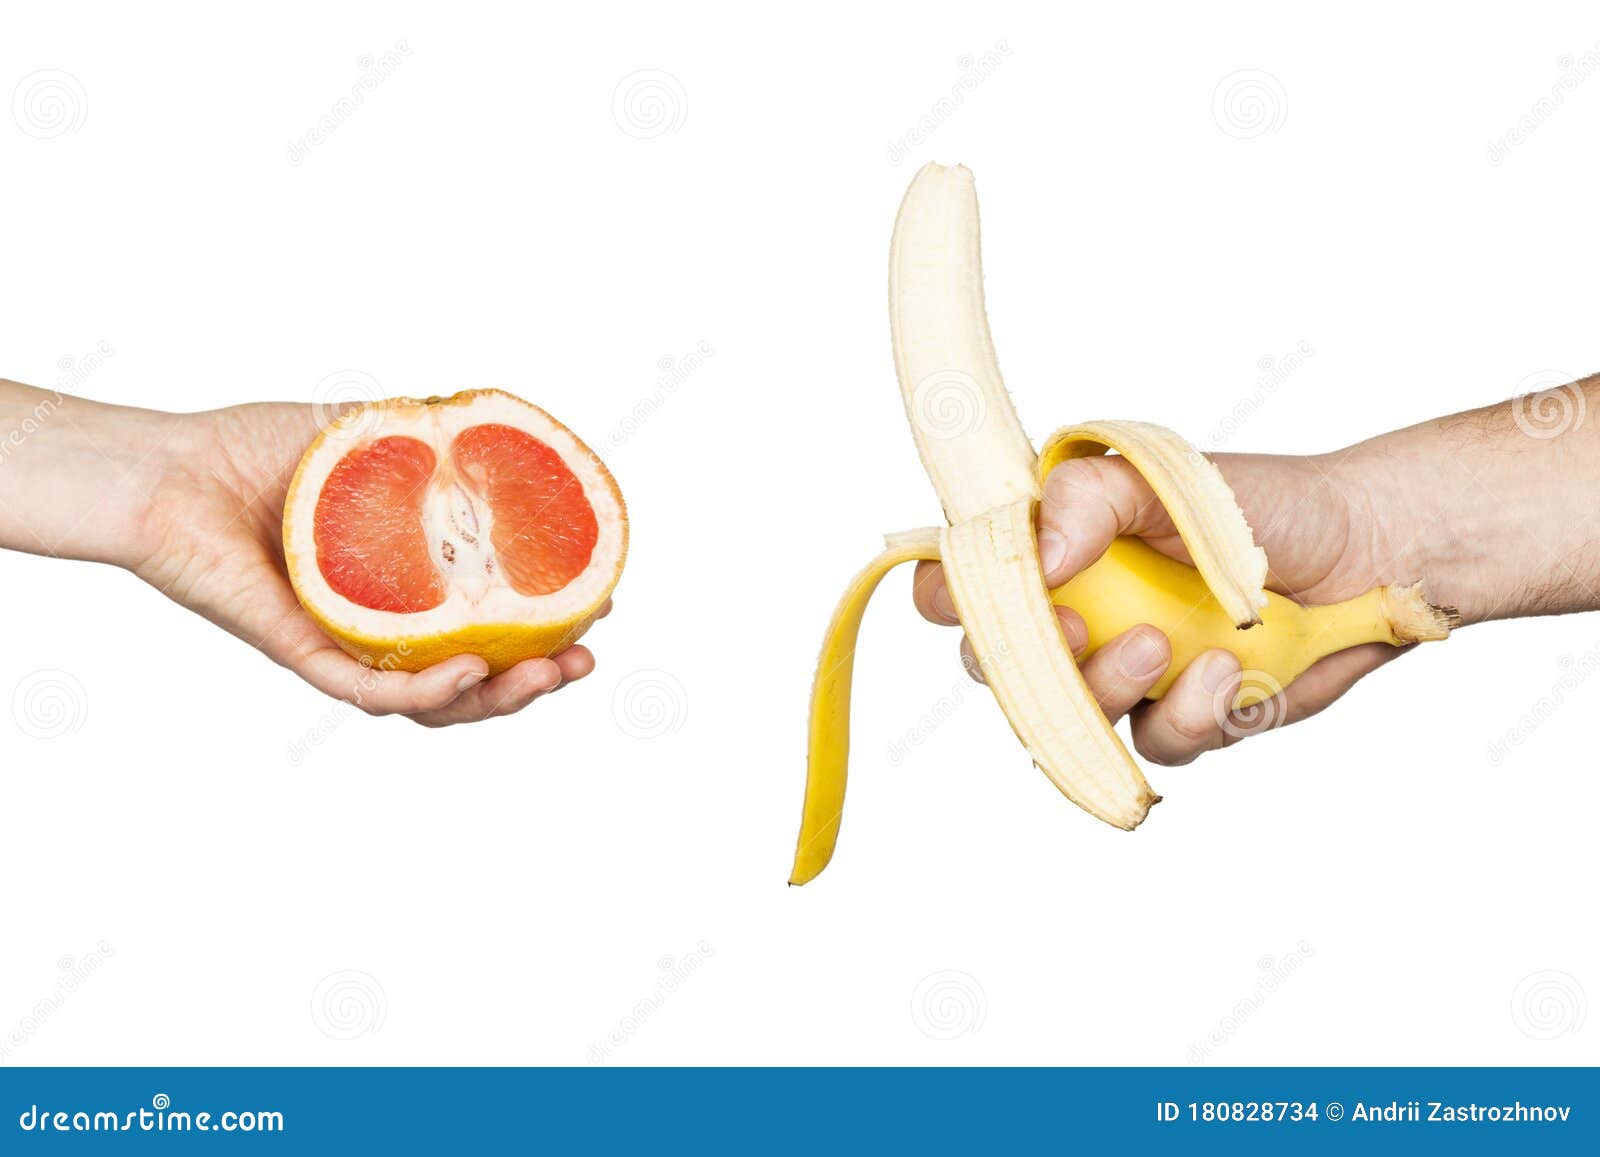 banana vs vagina